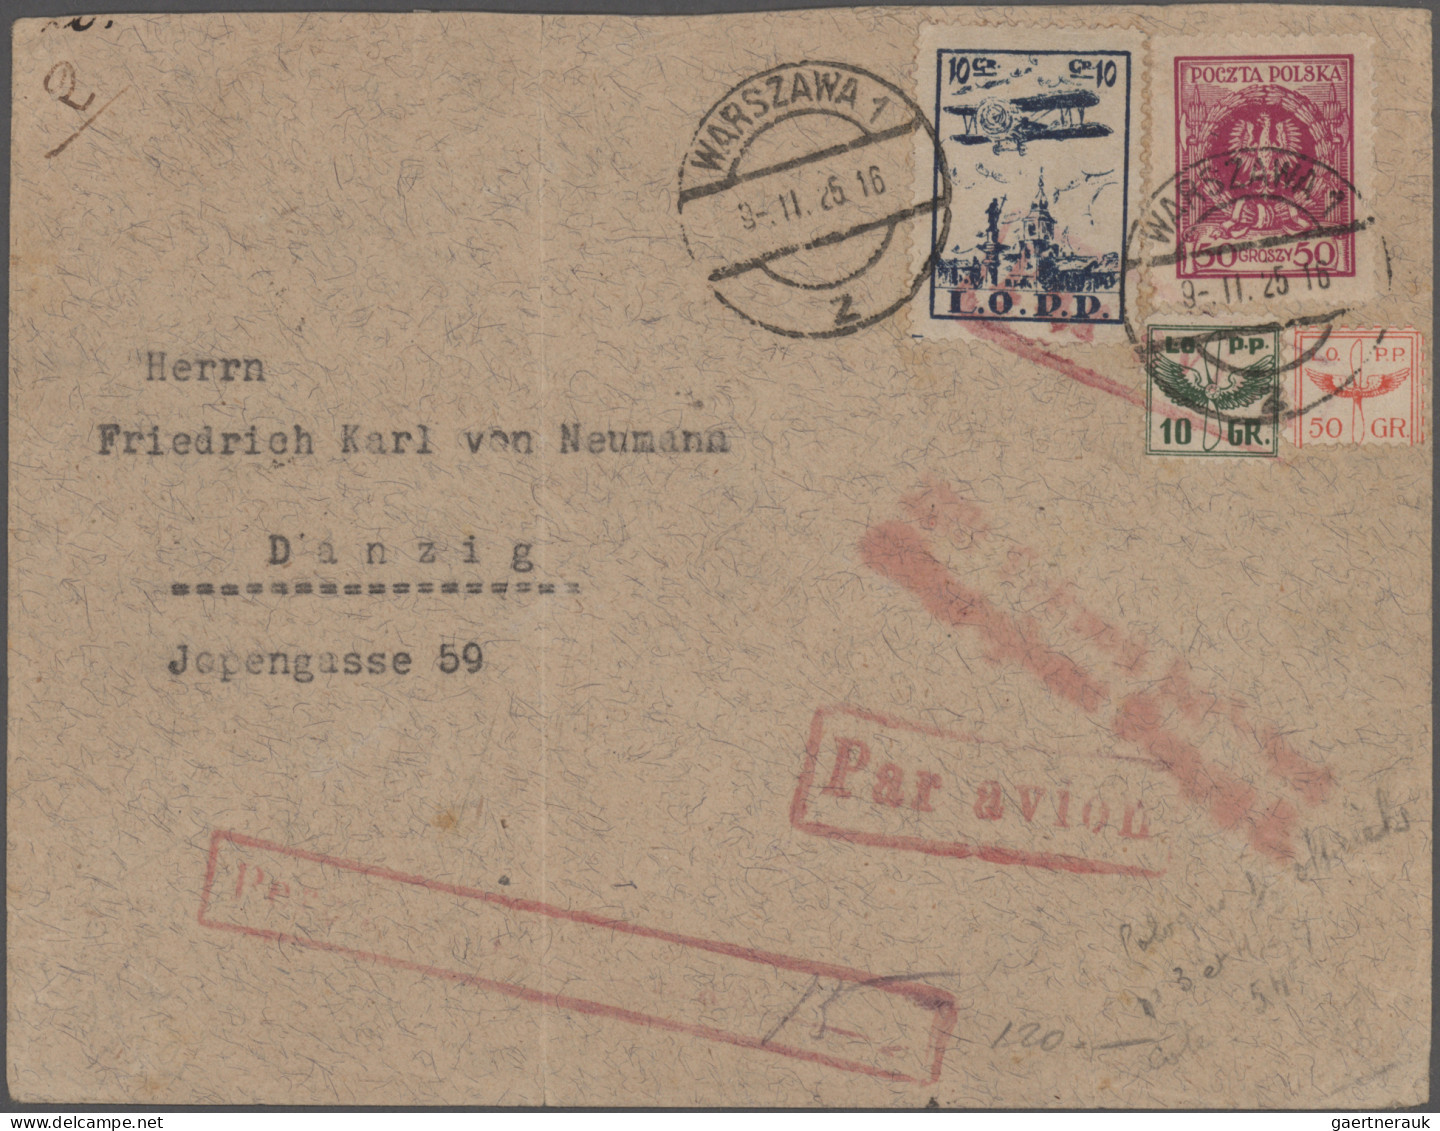 Danzig - Flugpost: 1922/1937, interessanter Posten mit 70 Briefen, Karten und Ga